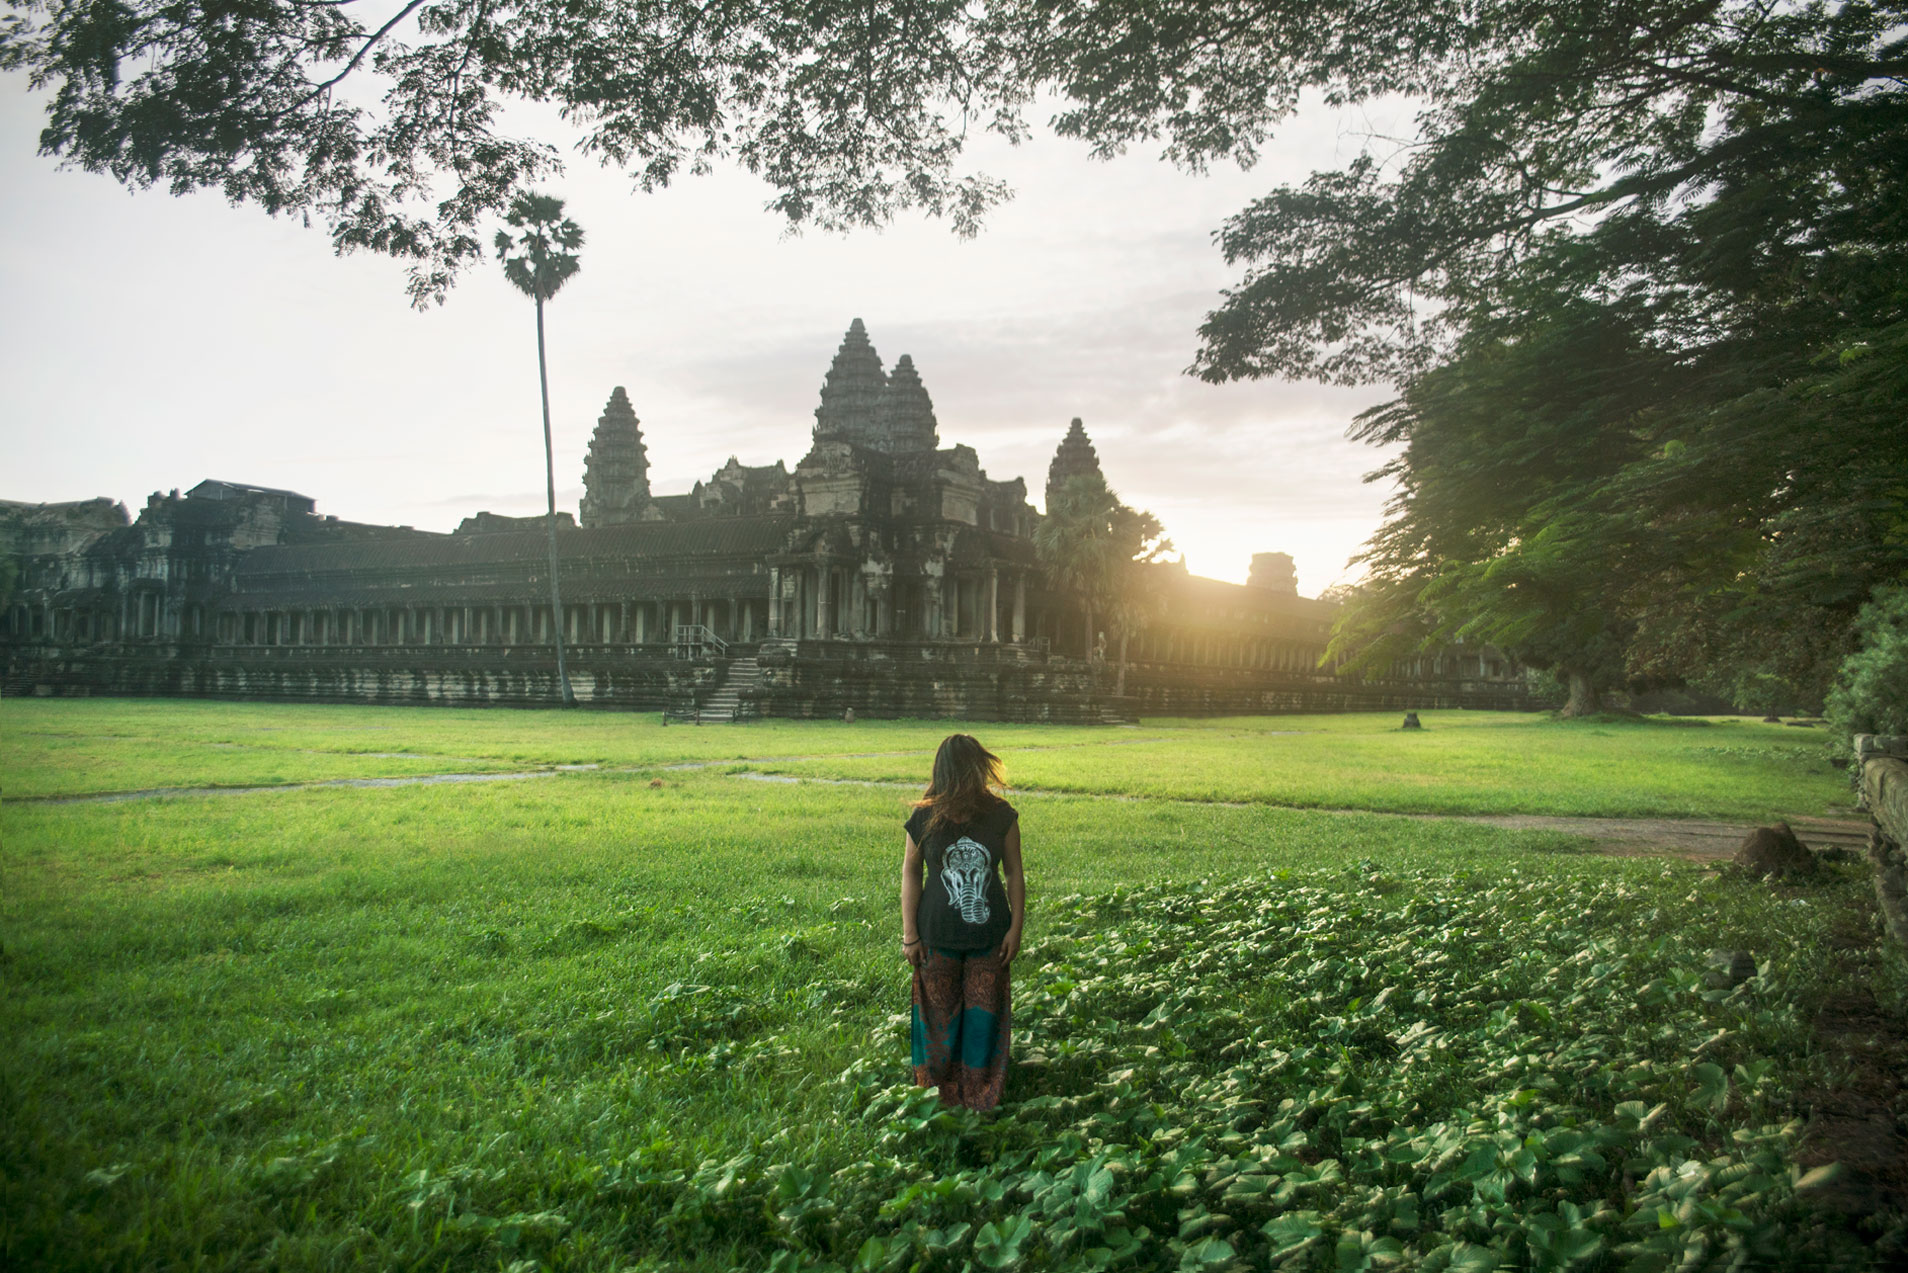 angkor wat cambodia